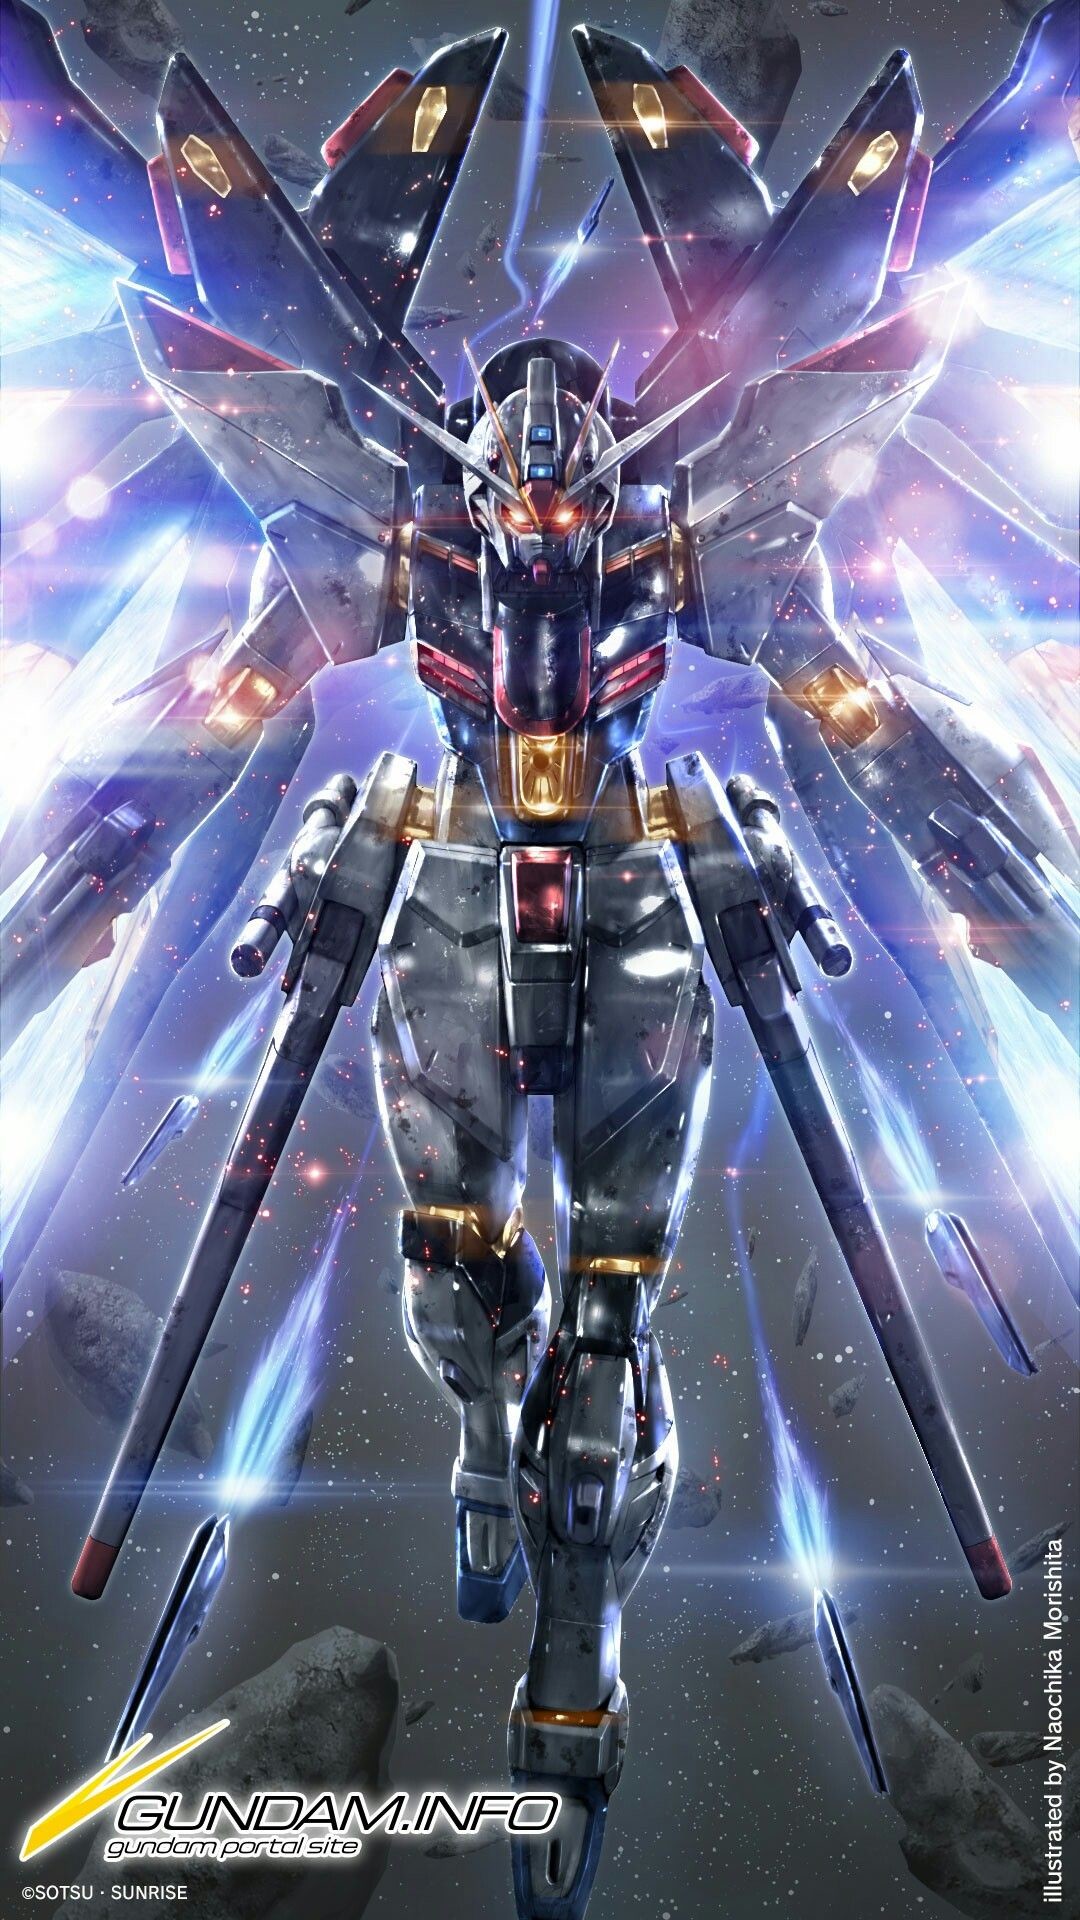 Gundam Wallpaper 1080p - Strike Freedom Gundam Wallpaper Hd , HD Wallpaper & Backgrounds